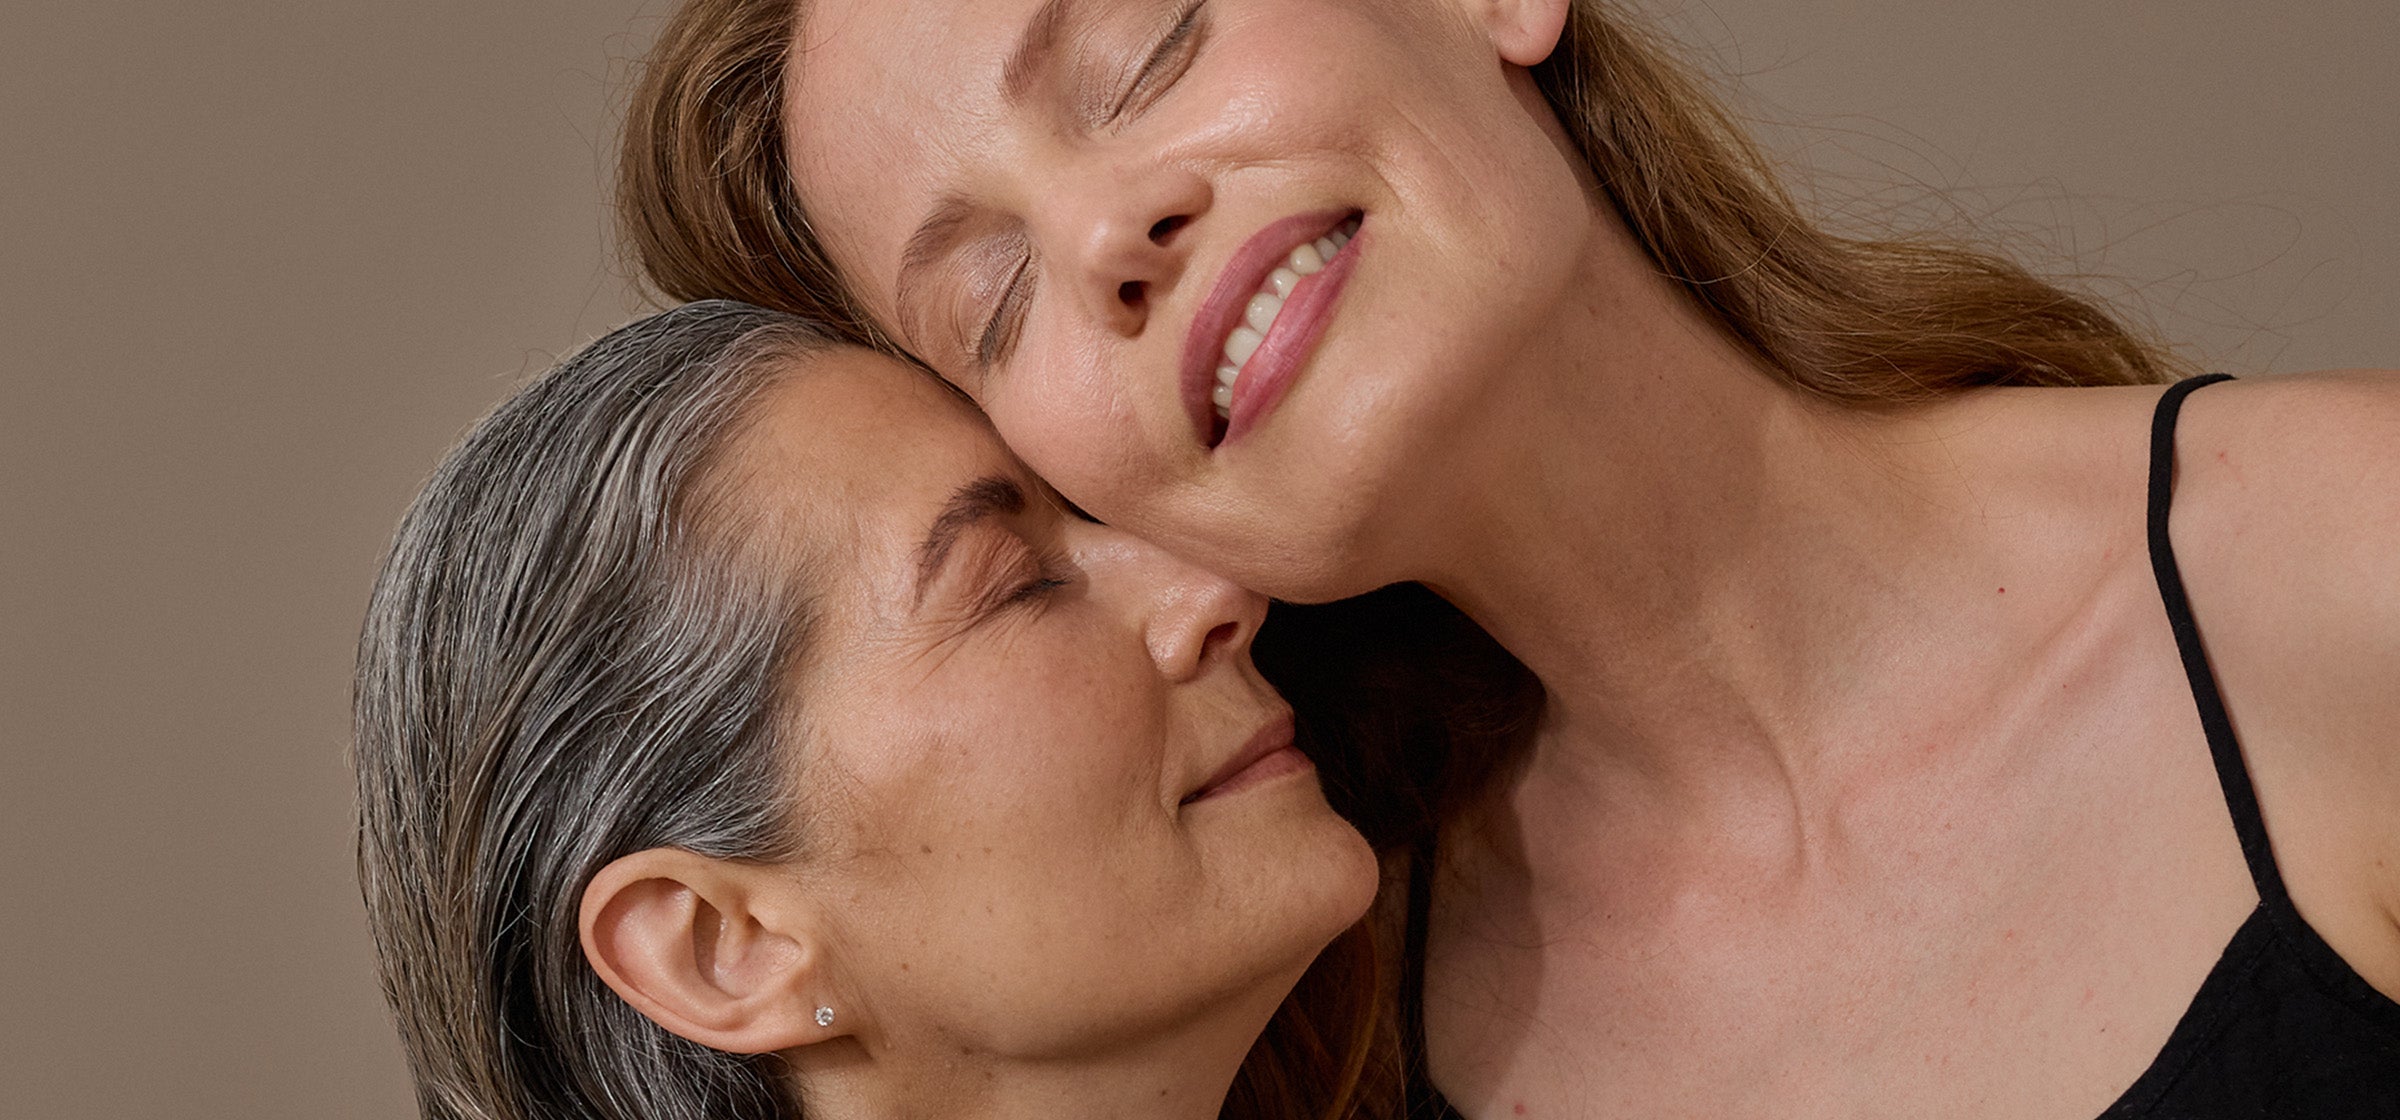 Reife Haut: Tipps für die perfekte Well-Aging-Pflege